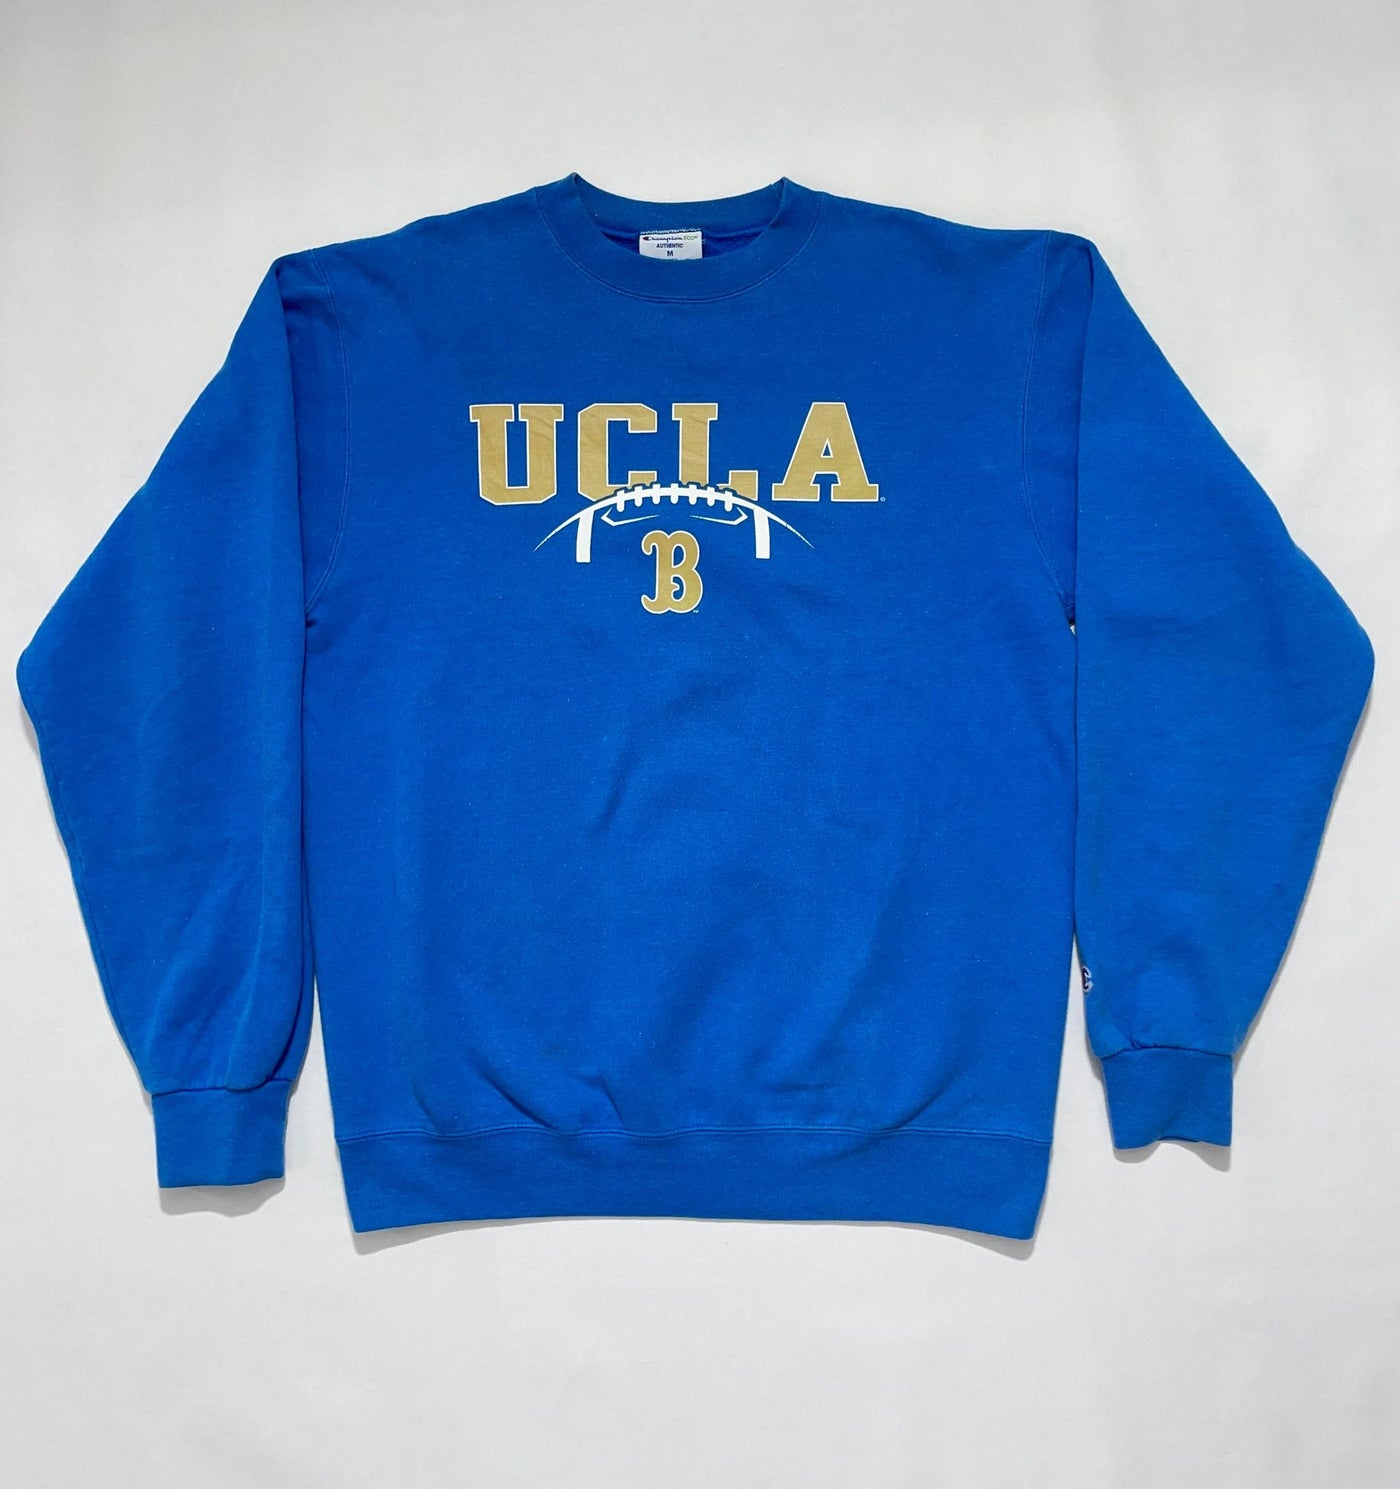 Vintage champion UCLA sweatshirt